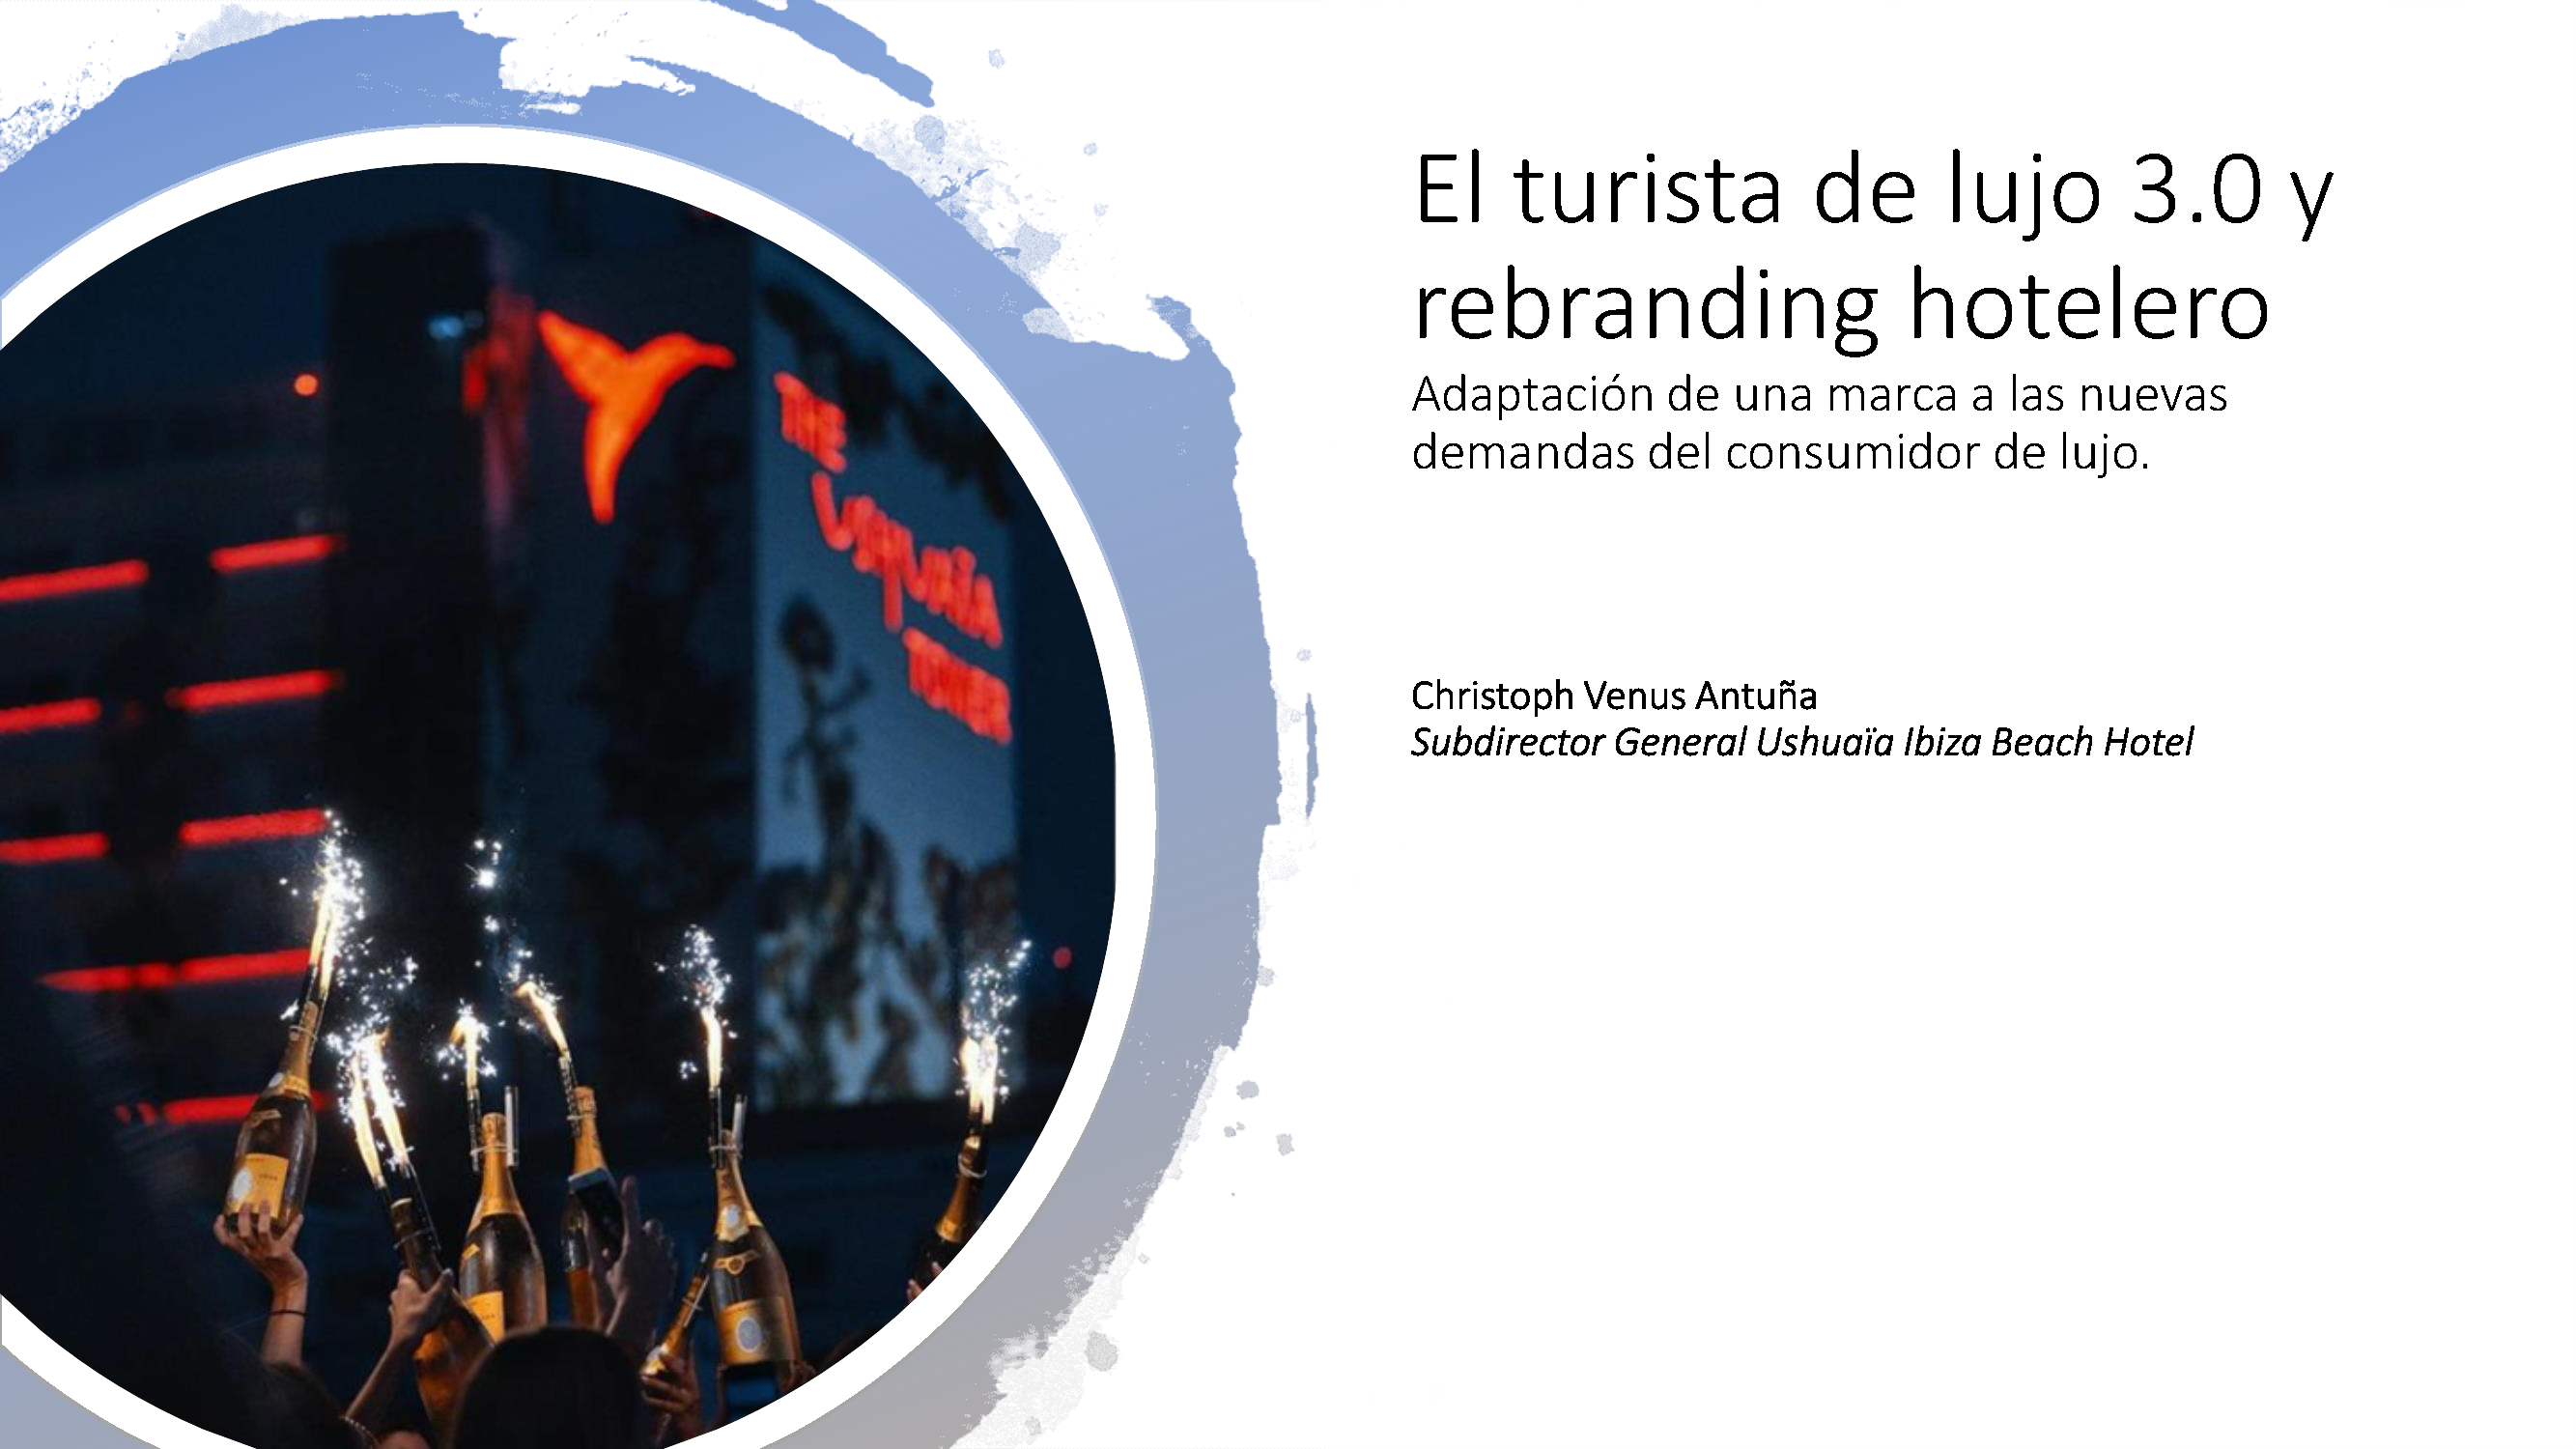 Seminario online "El turista de lujo 3.0 y rebranding hotelero". Adaptación de una marca a las nuevas demandas